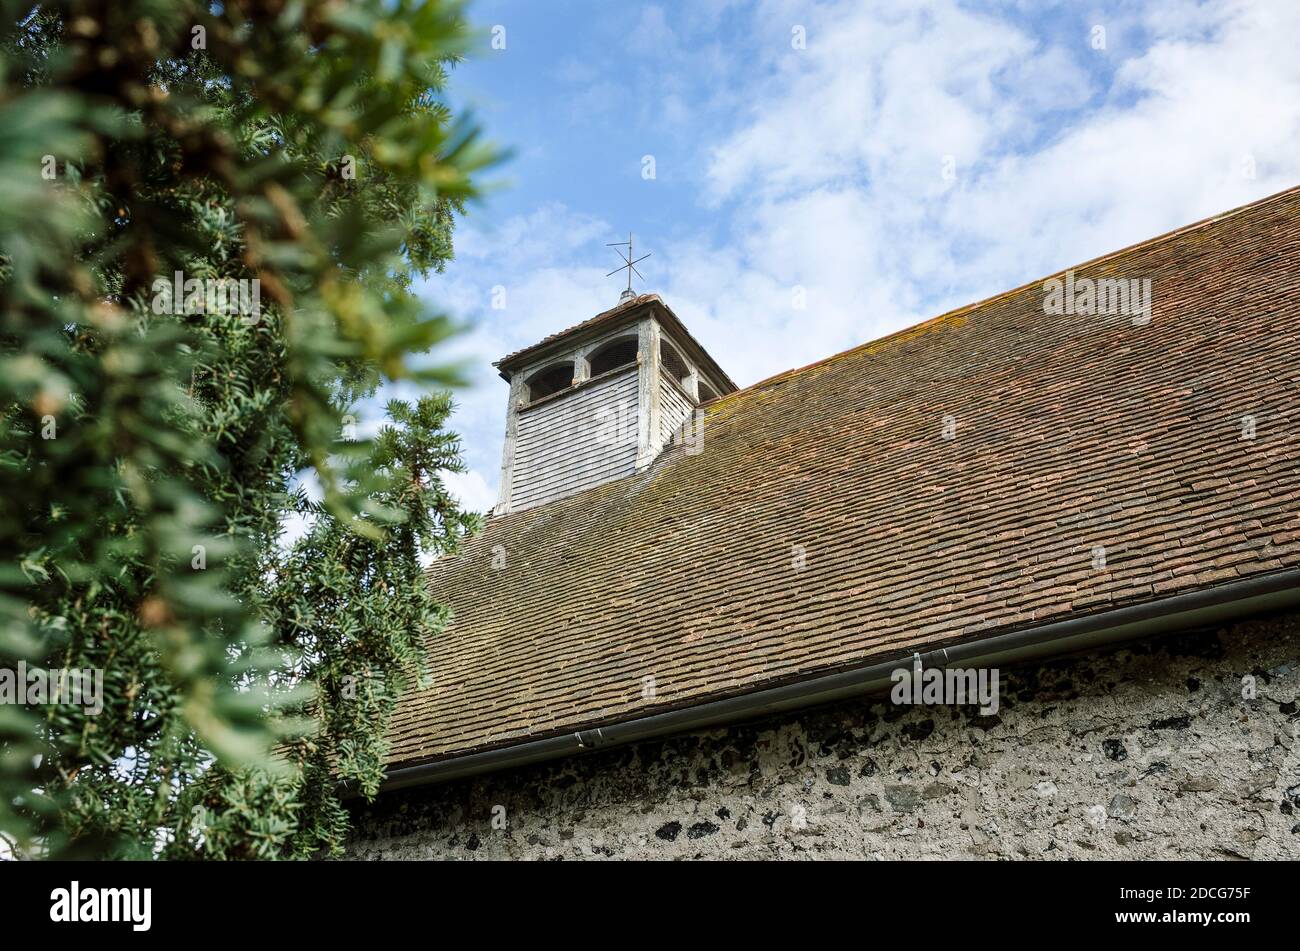 Tour et toit de l'église St Batholomew dans le Kent Goodnestone Angleterre Royaume-Uni Banque D'Images